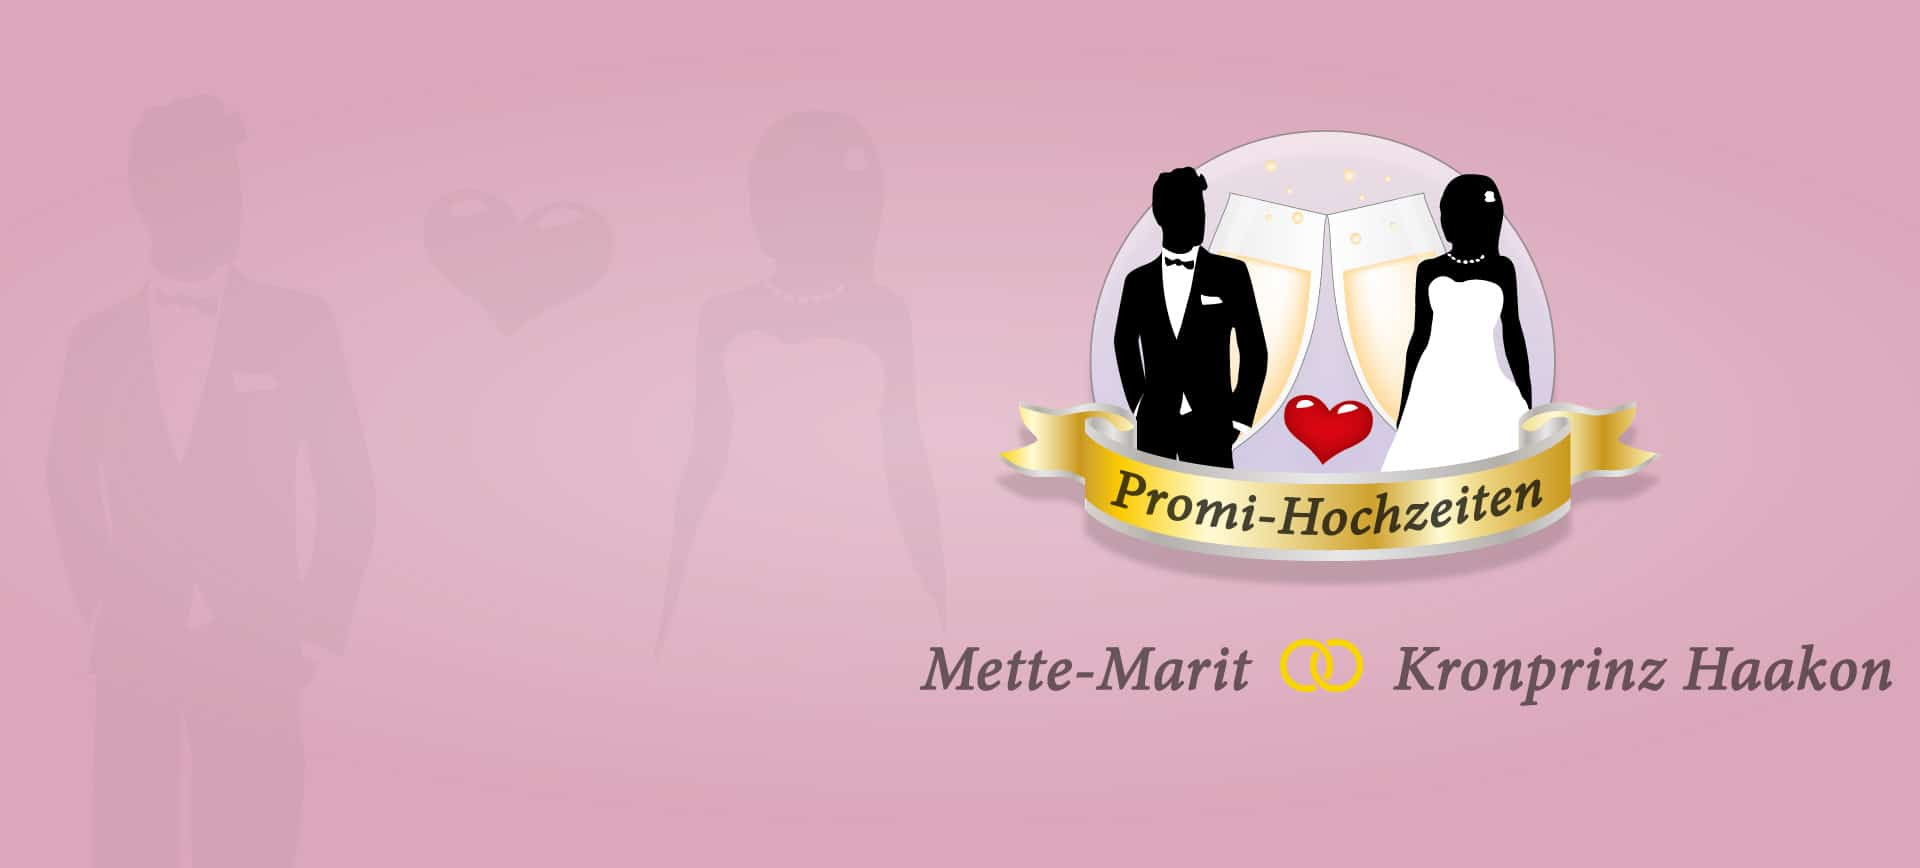 Hochzeitskarten Paradies
 Promi Hochzeiten – Mette Marit und Kronprinz Haakon